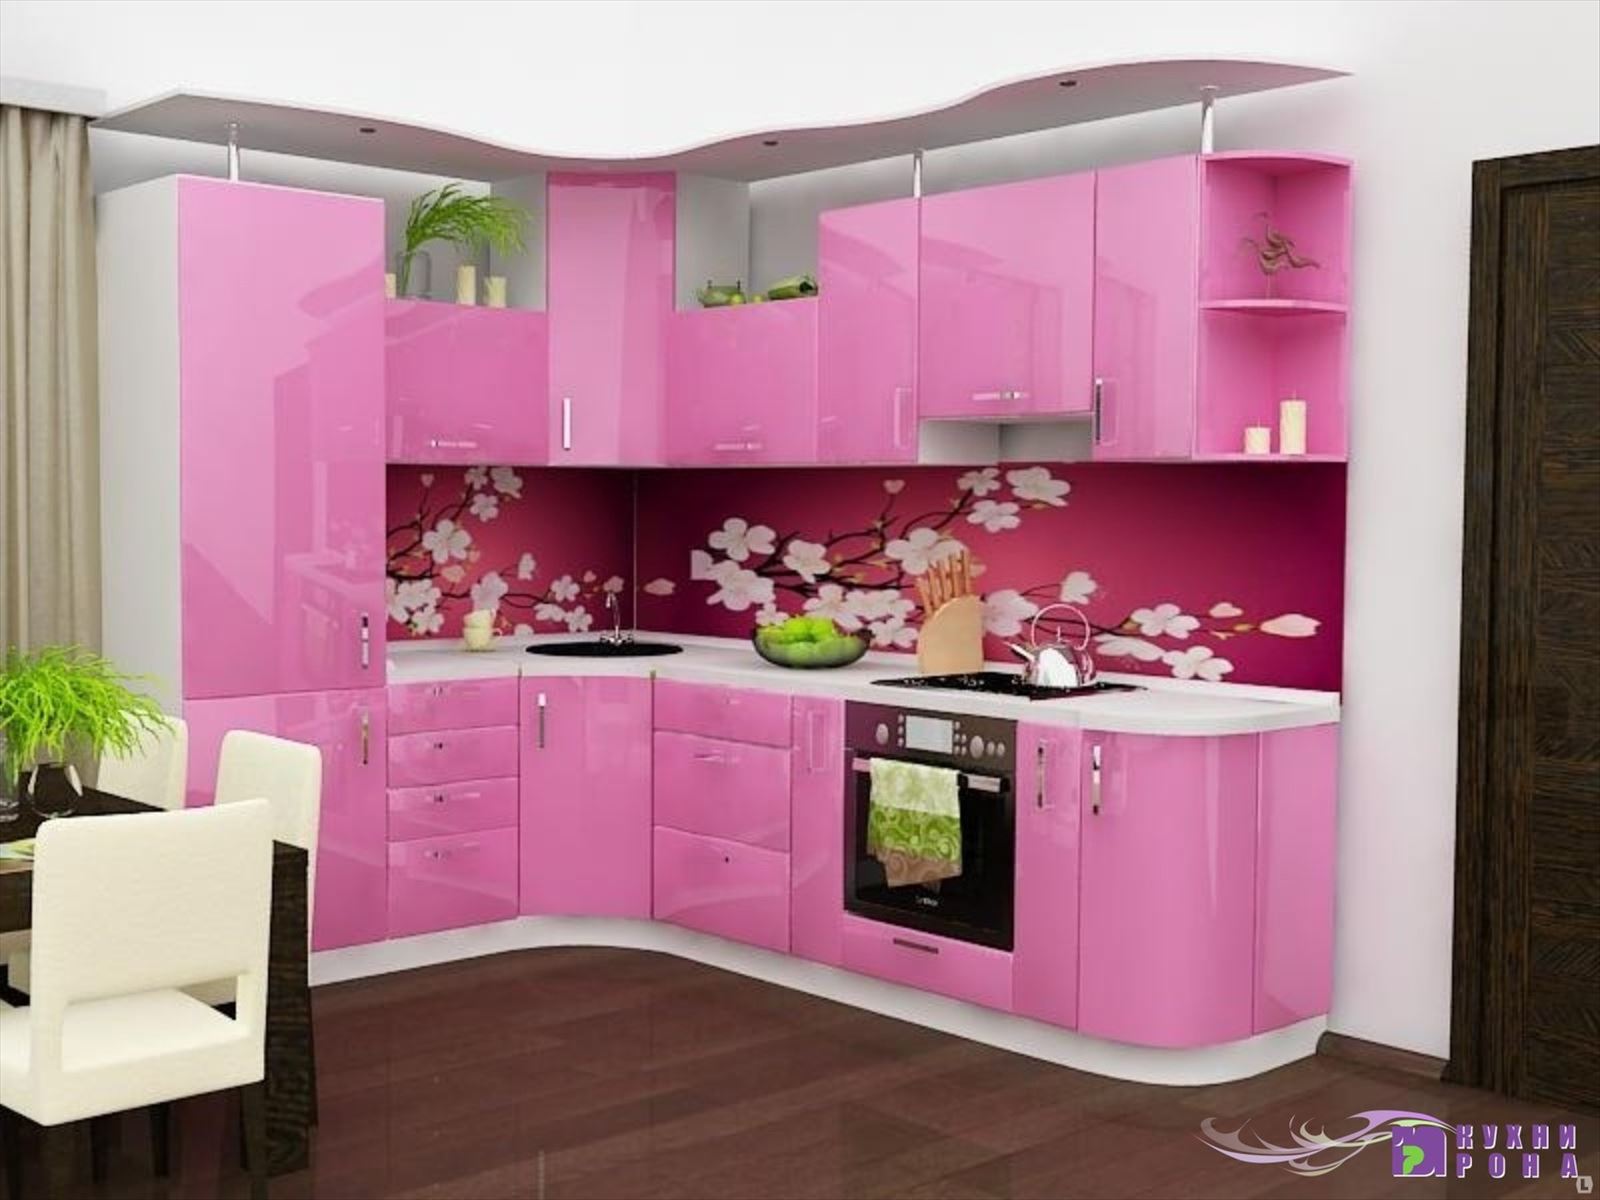 Кухонный гарнитур угловой цвет. Кухонные гарнитуры. Кухонный гарнитур розовый. Красивый кухонный гарнитур. Угловые кухни.